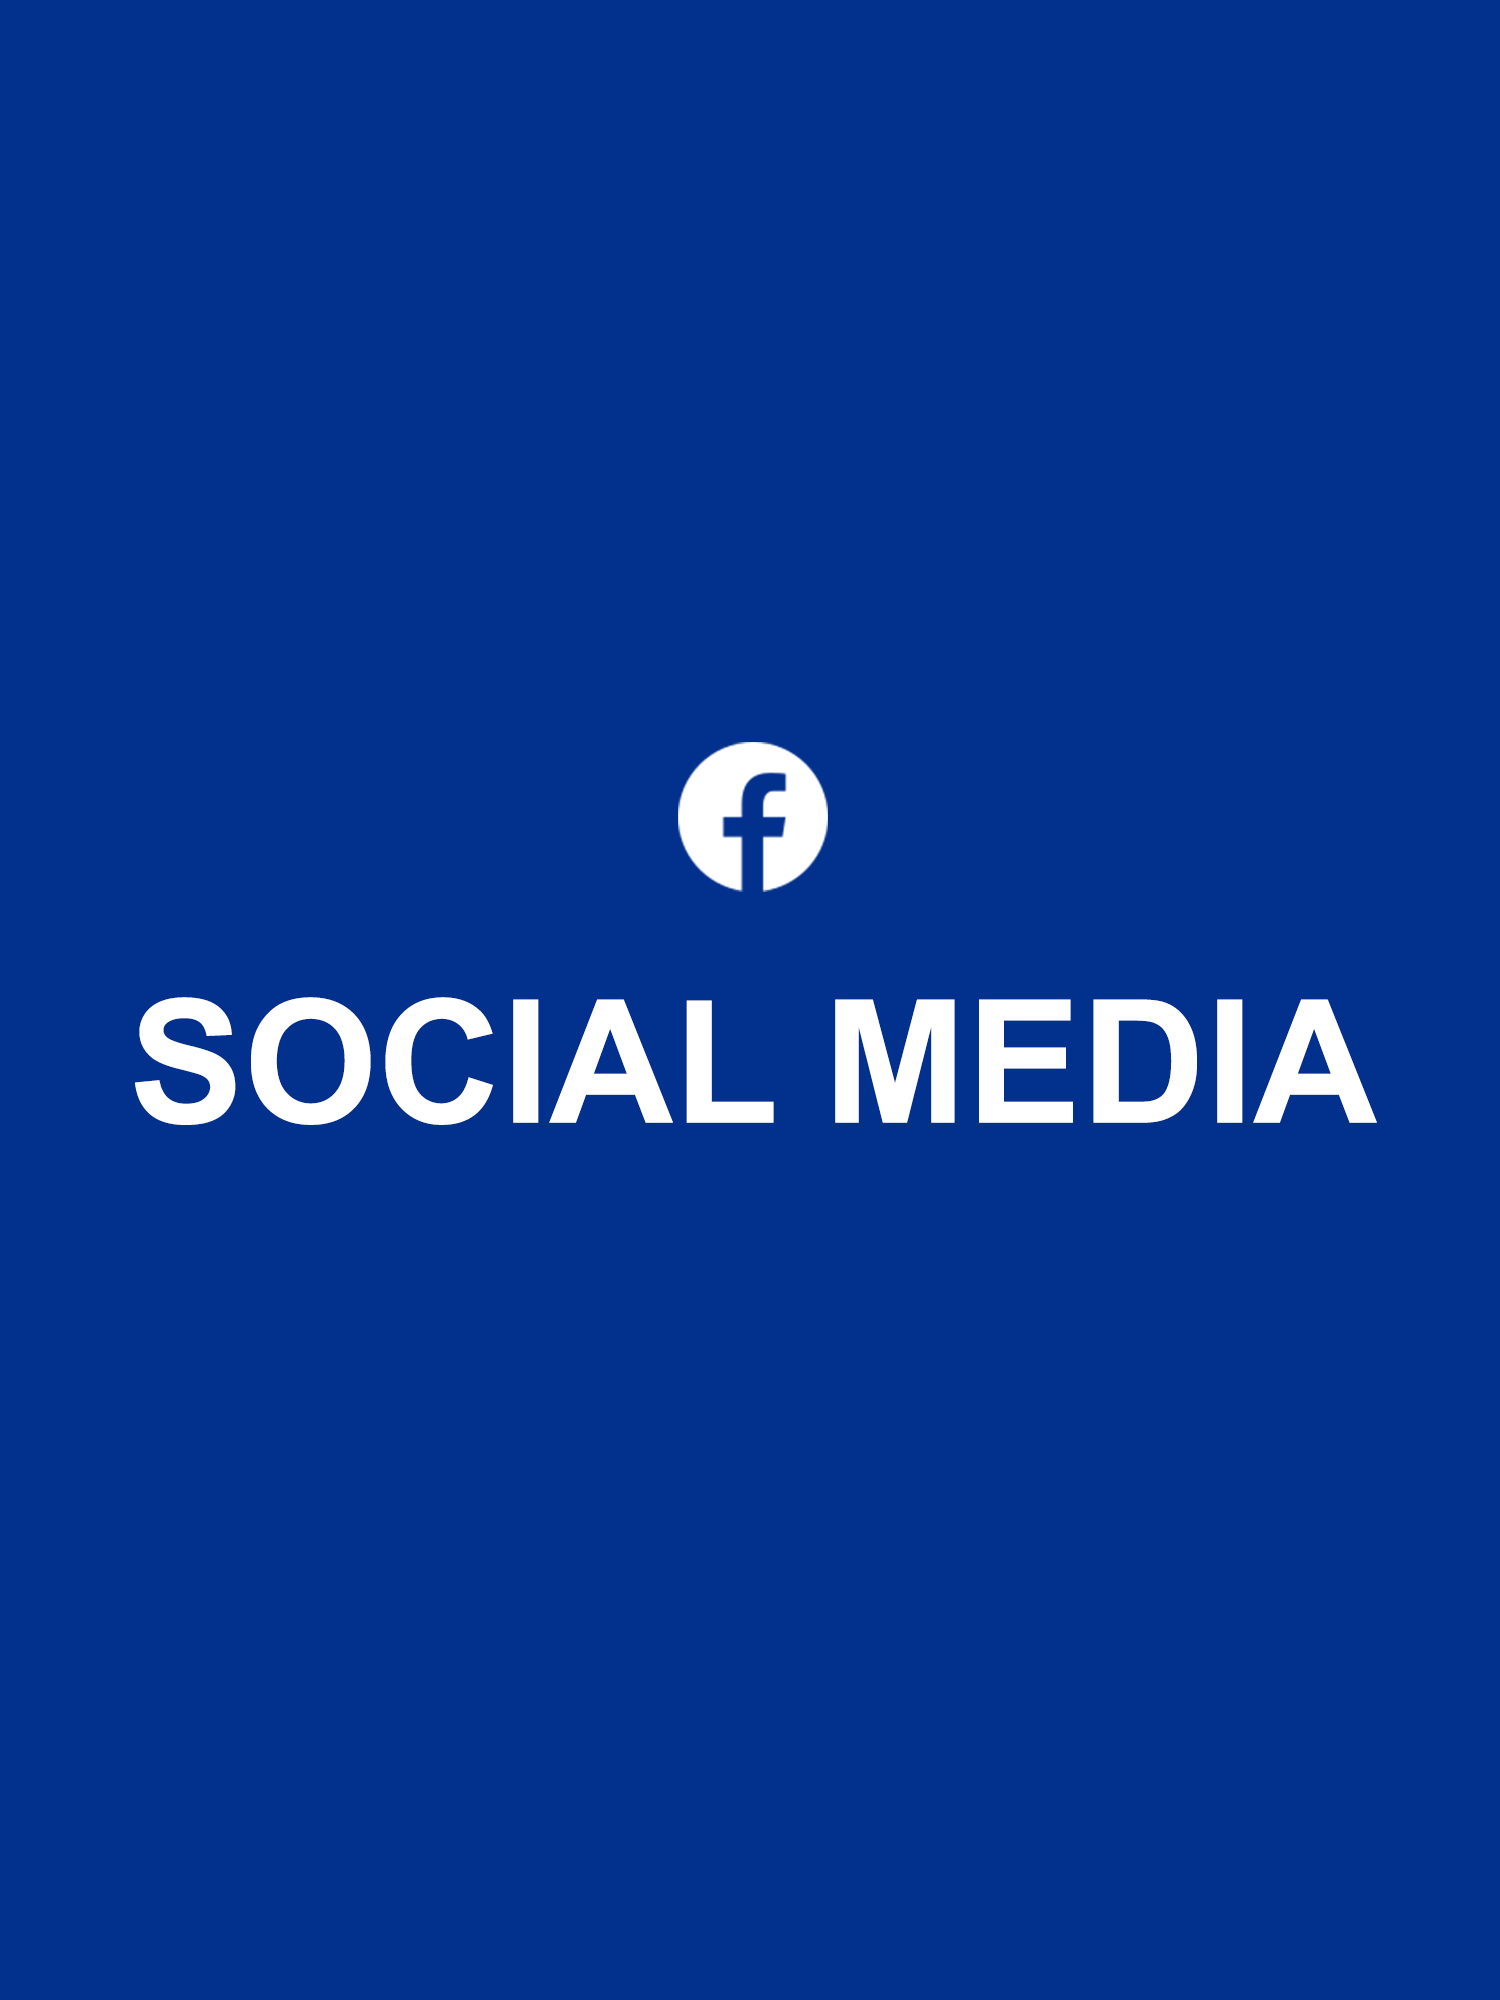 Social Media for Dental Clinics